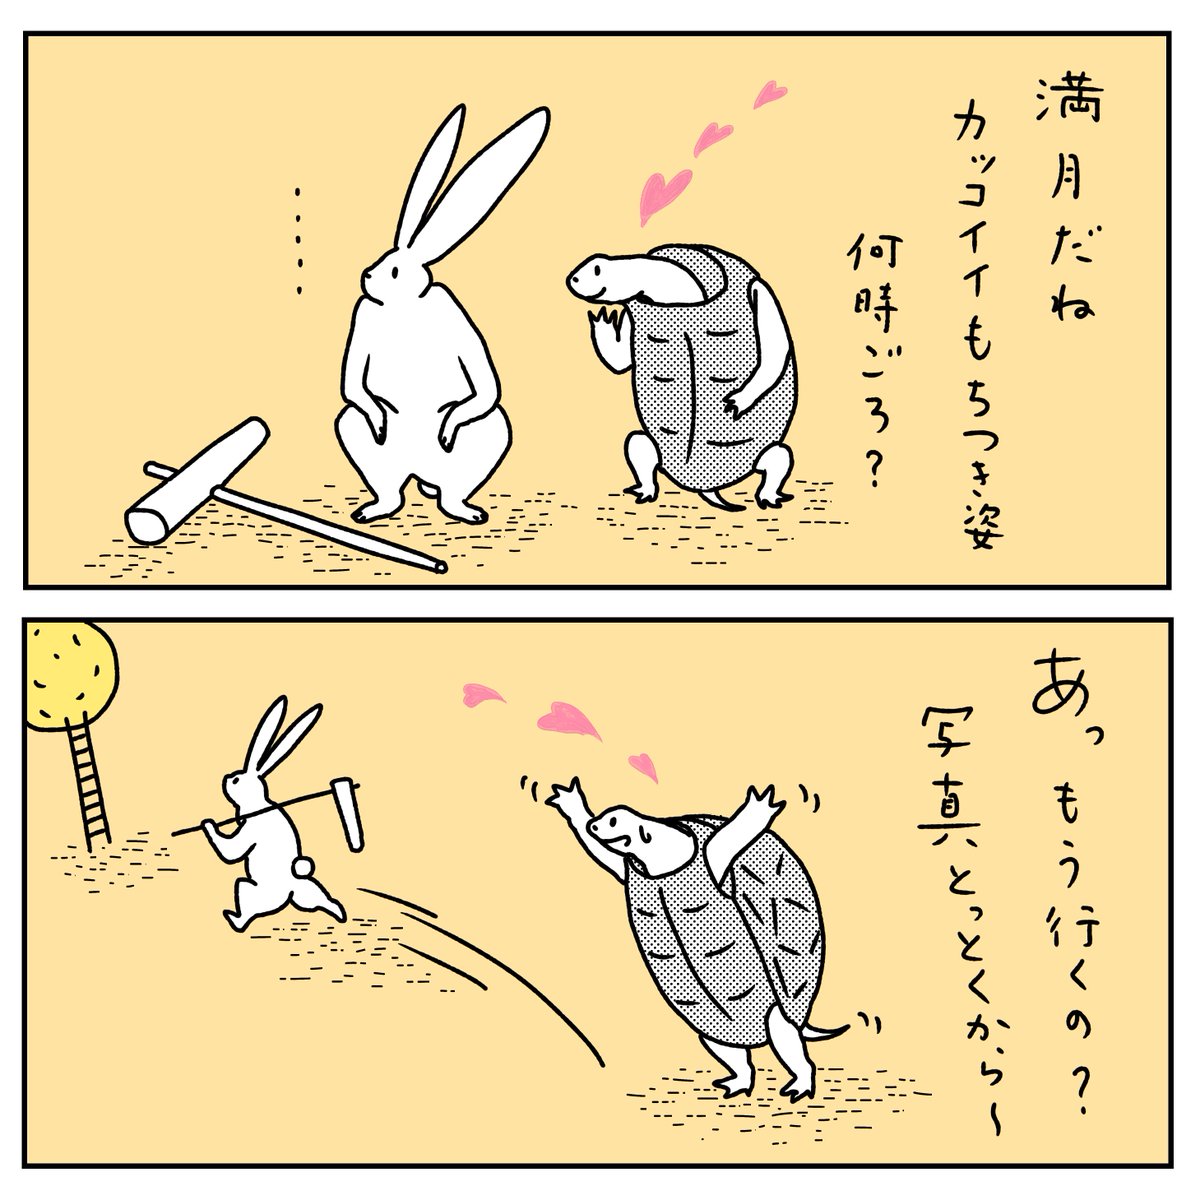 石川ともこ En Twitter うさぎとかめ Illustration イラスト マンガ うさぎ ウサギ かめ カメ 秋 月 満月